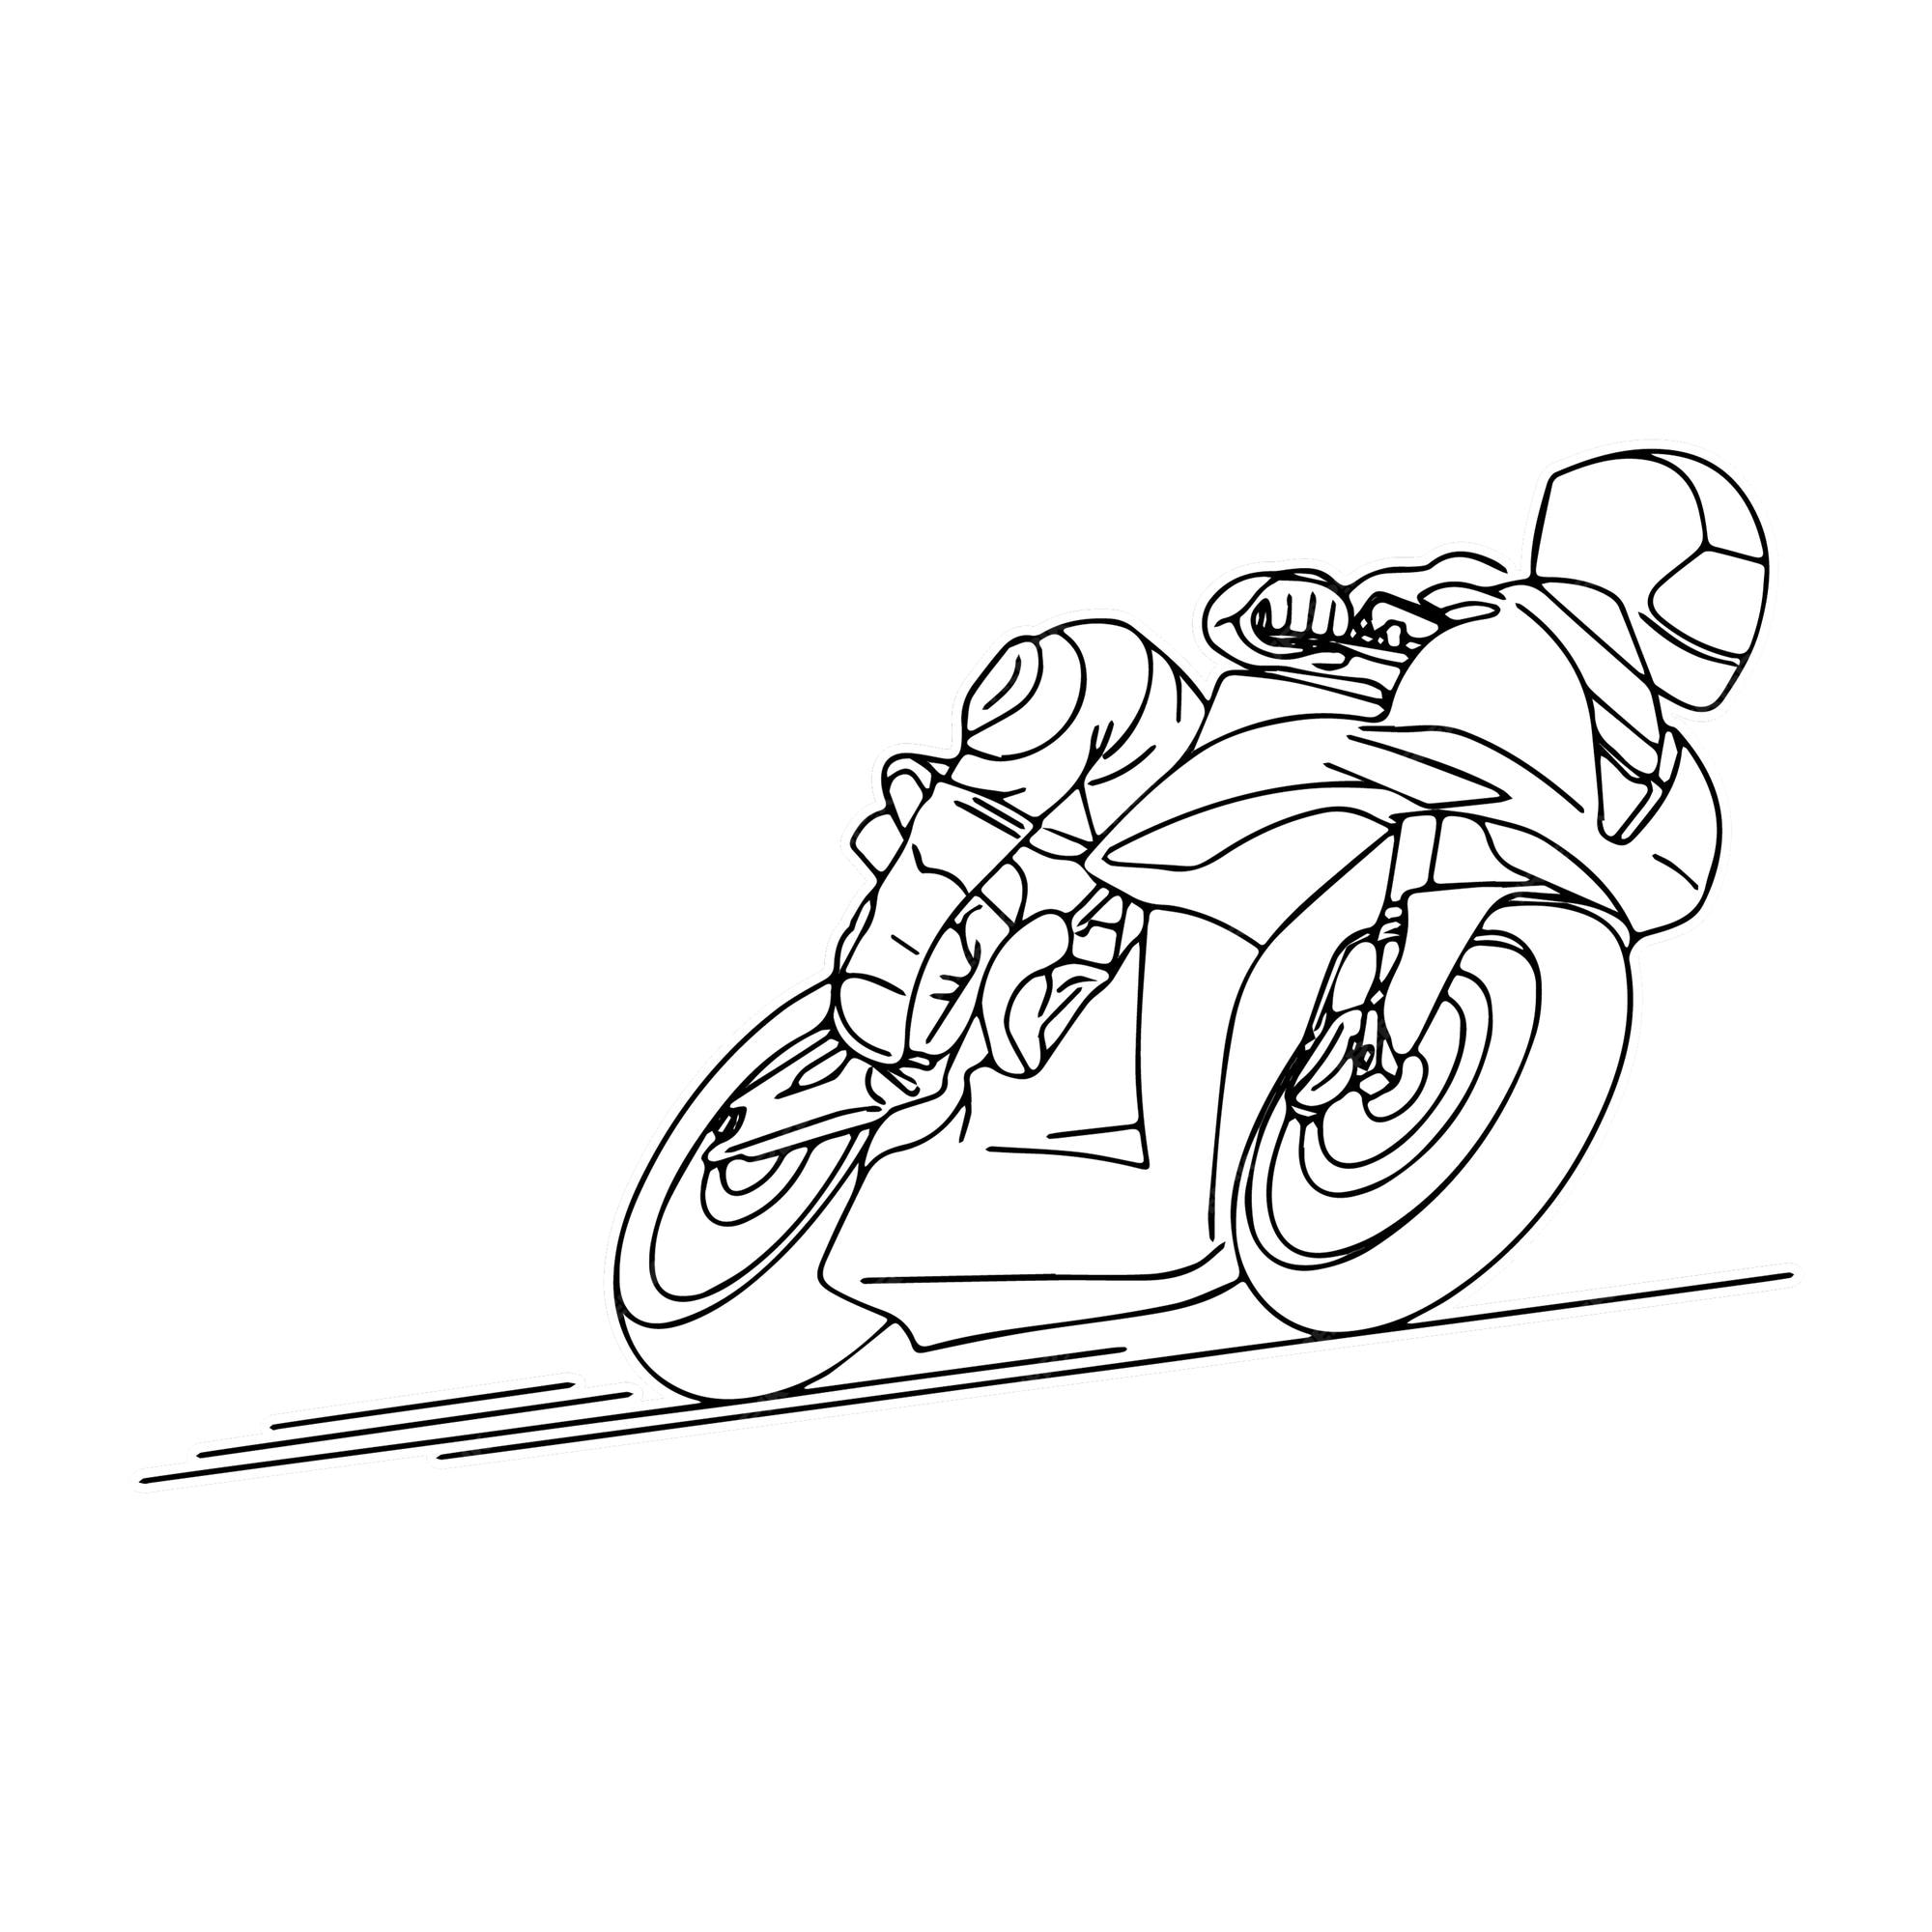 página para colorir isolada de corrida de moto para crianças